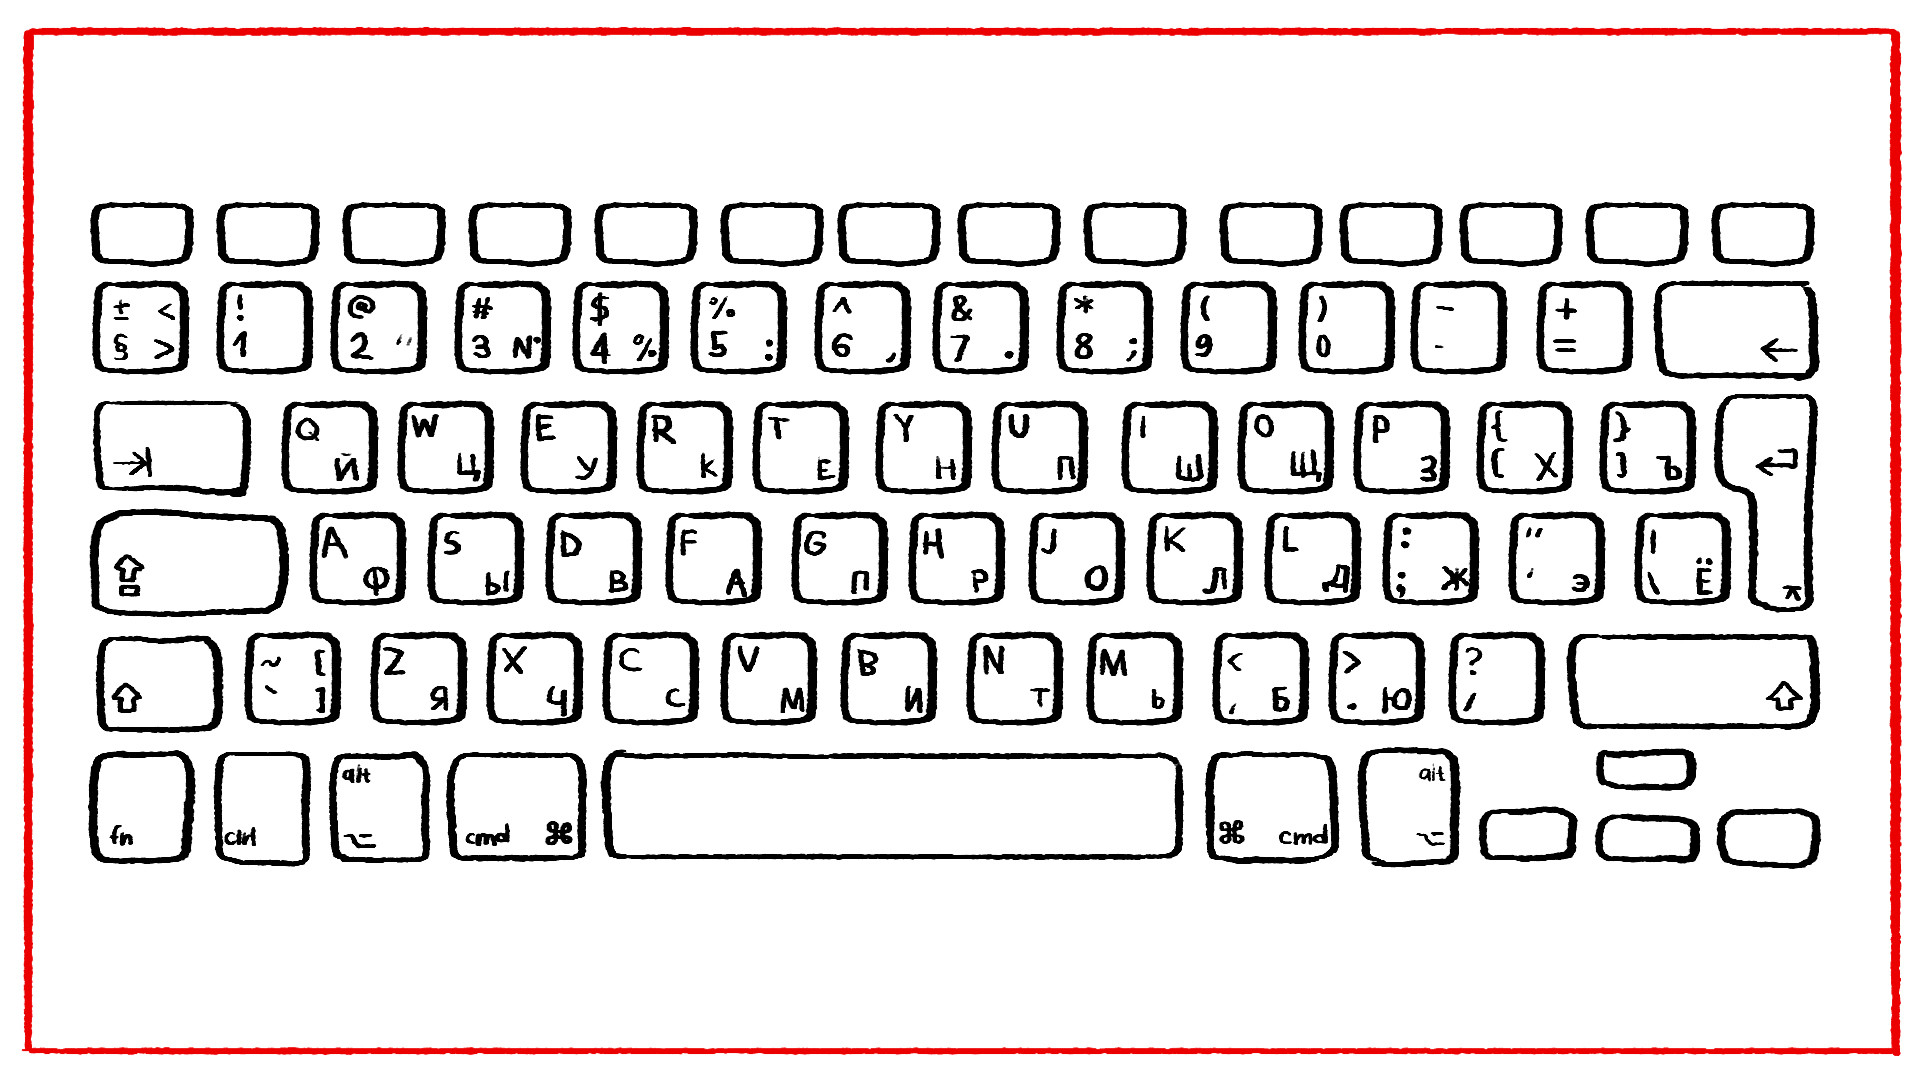 Напечатать на пк. Компьютерная клавиатура раскладка русская и английская. Клавиатура раскраска. Распечатка клавиатуры компьютера. Клавиатура компьютера трафарет.